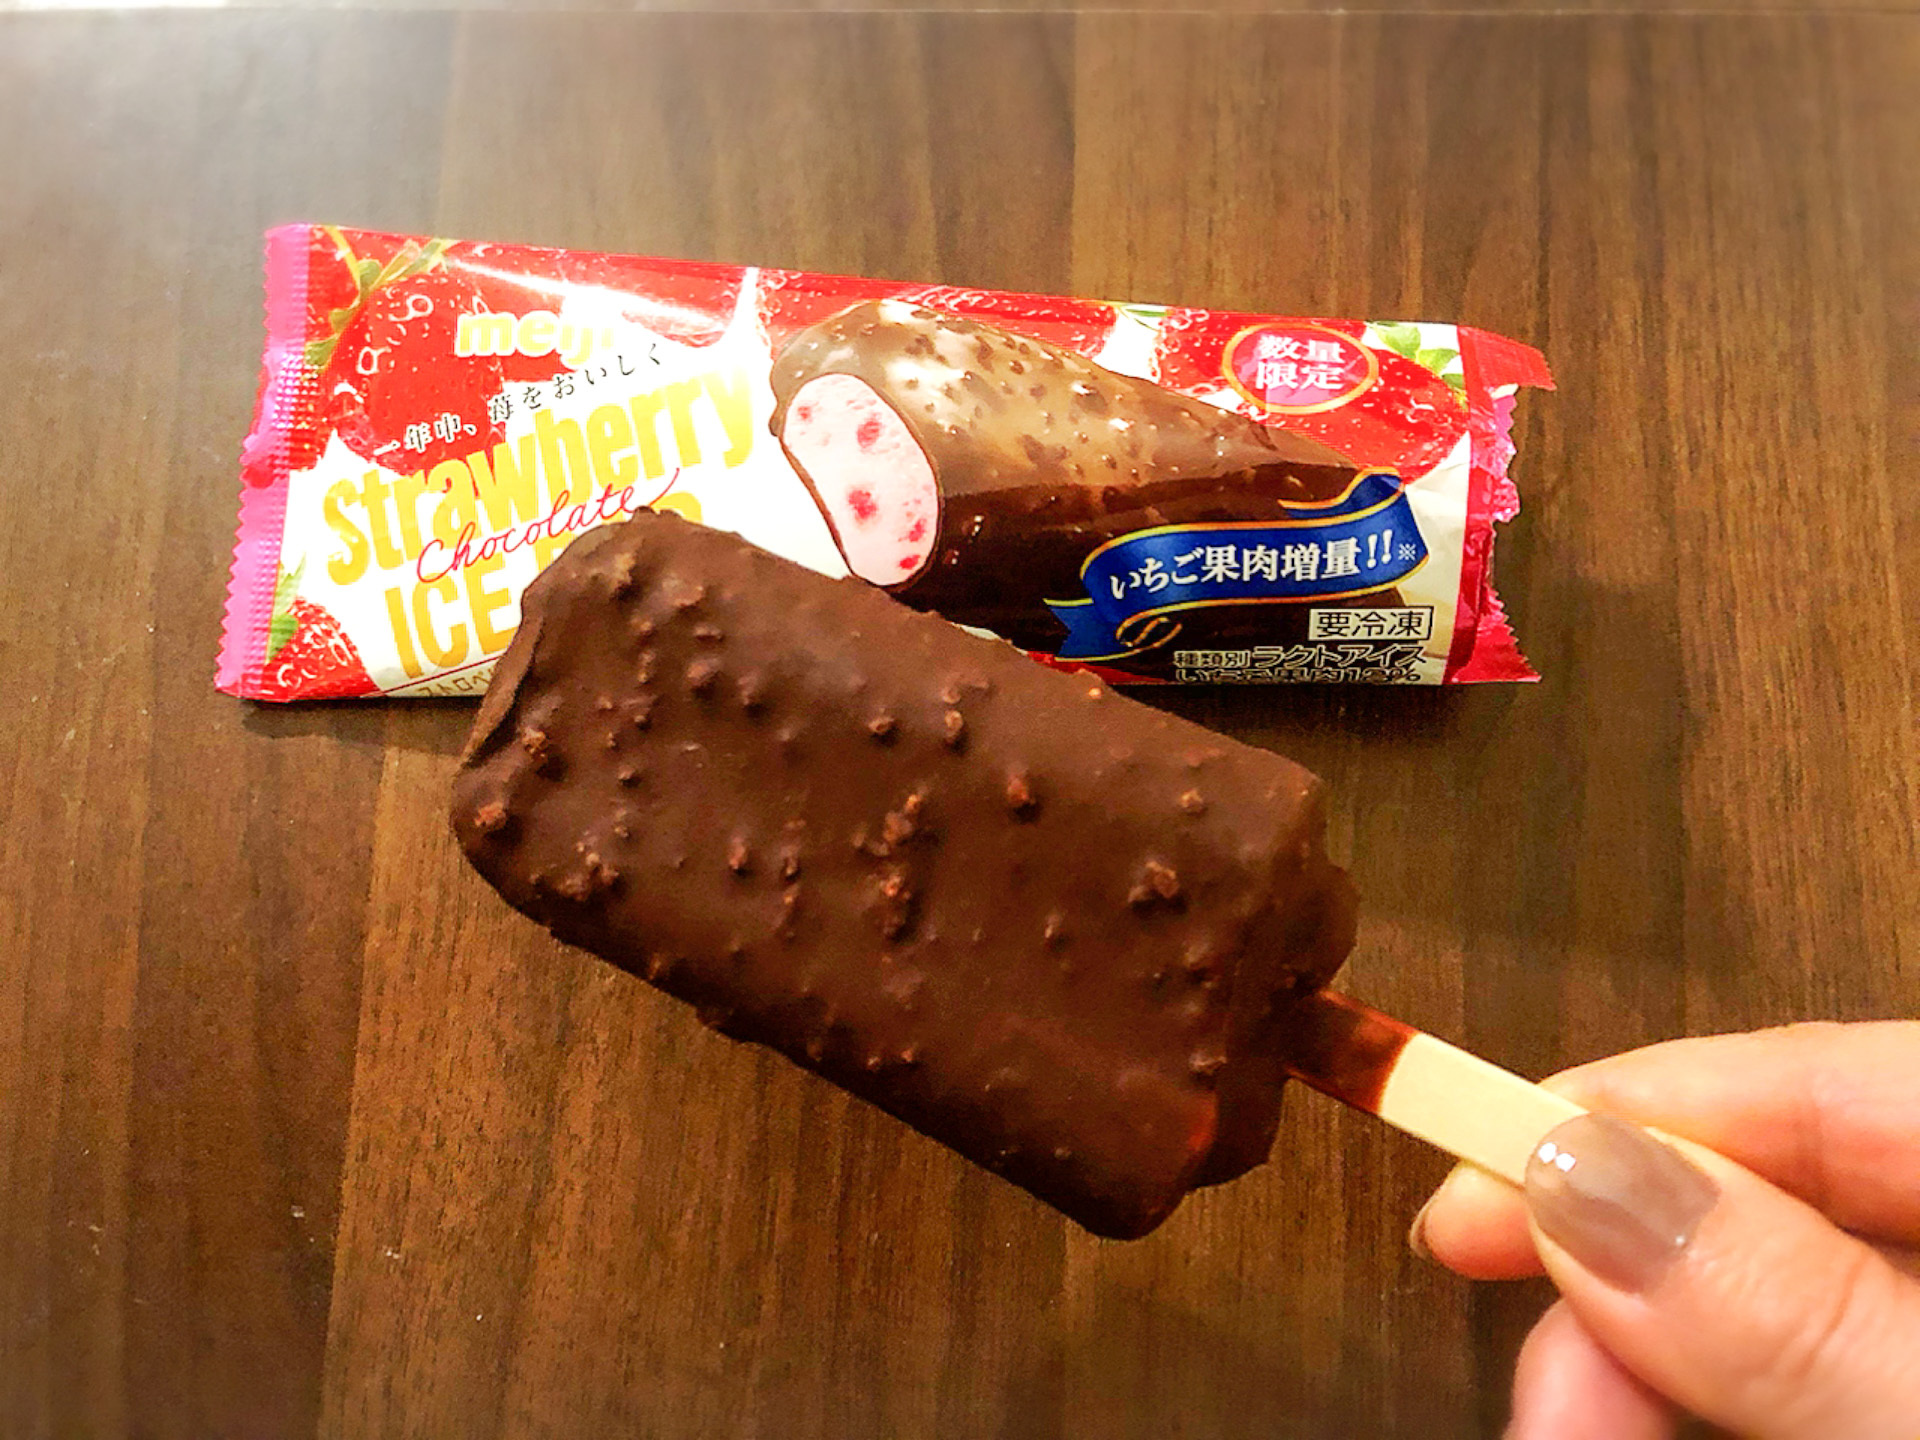 meiji人気商品「ストロベリー チョコレートアイスバー」がセブン-イレブンでバージョンアップして新発売